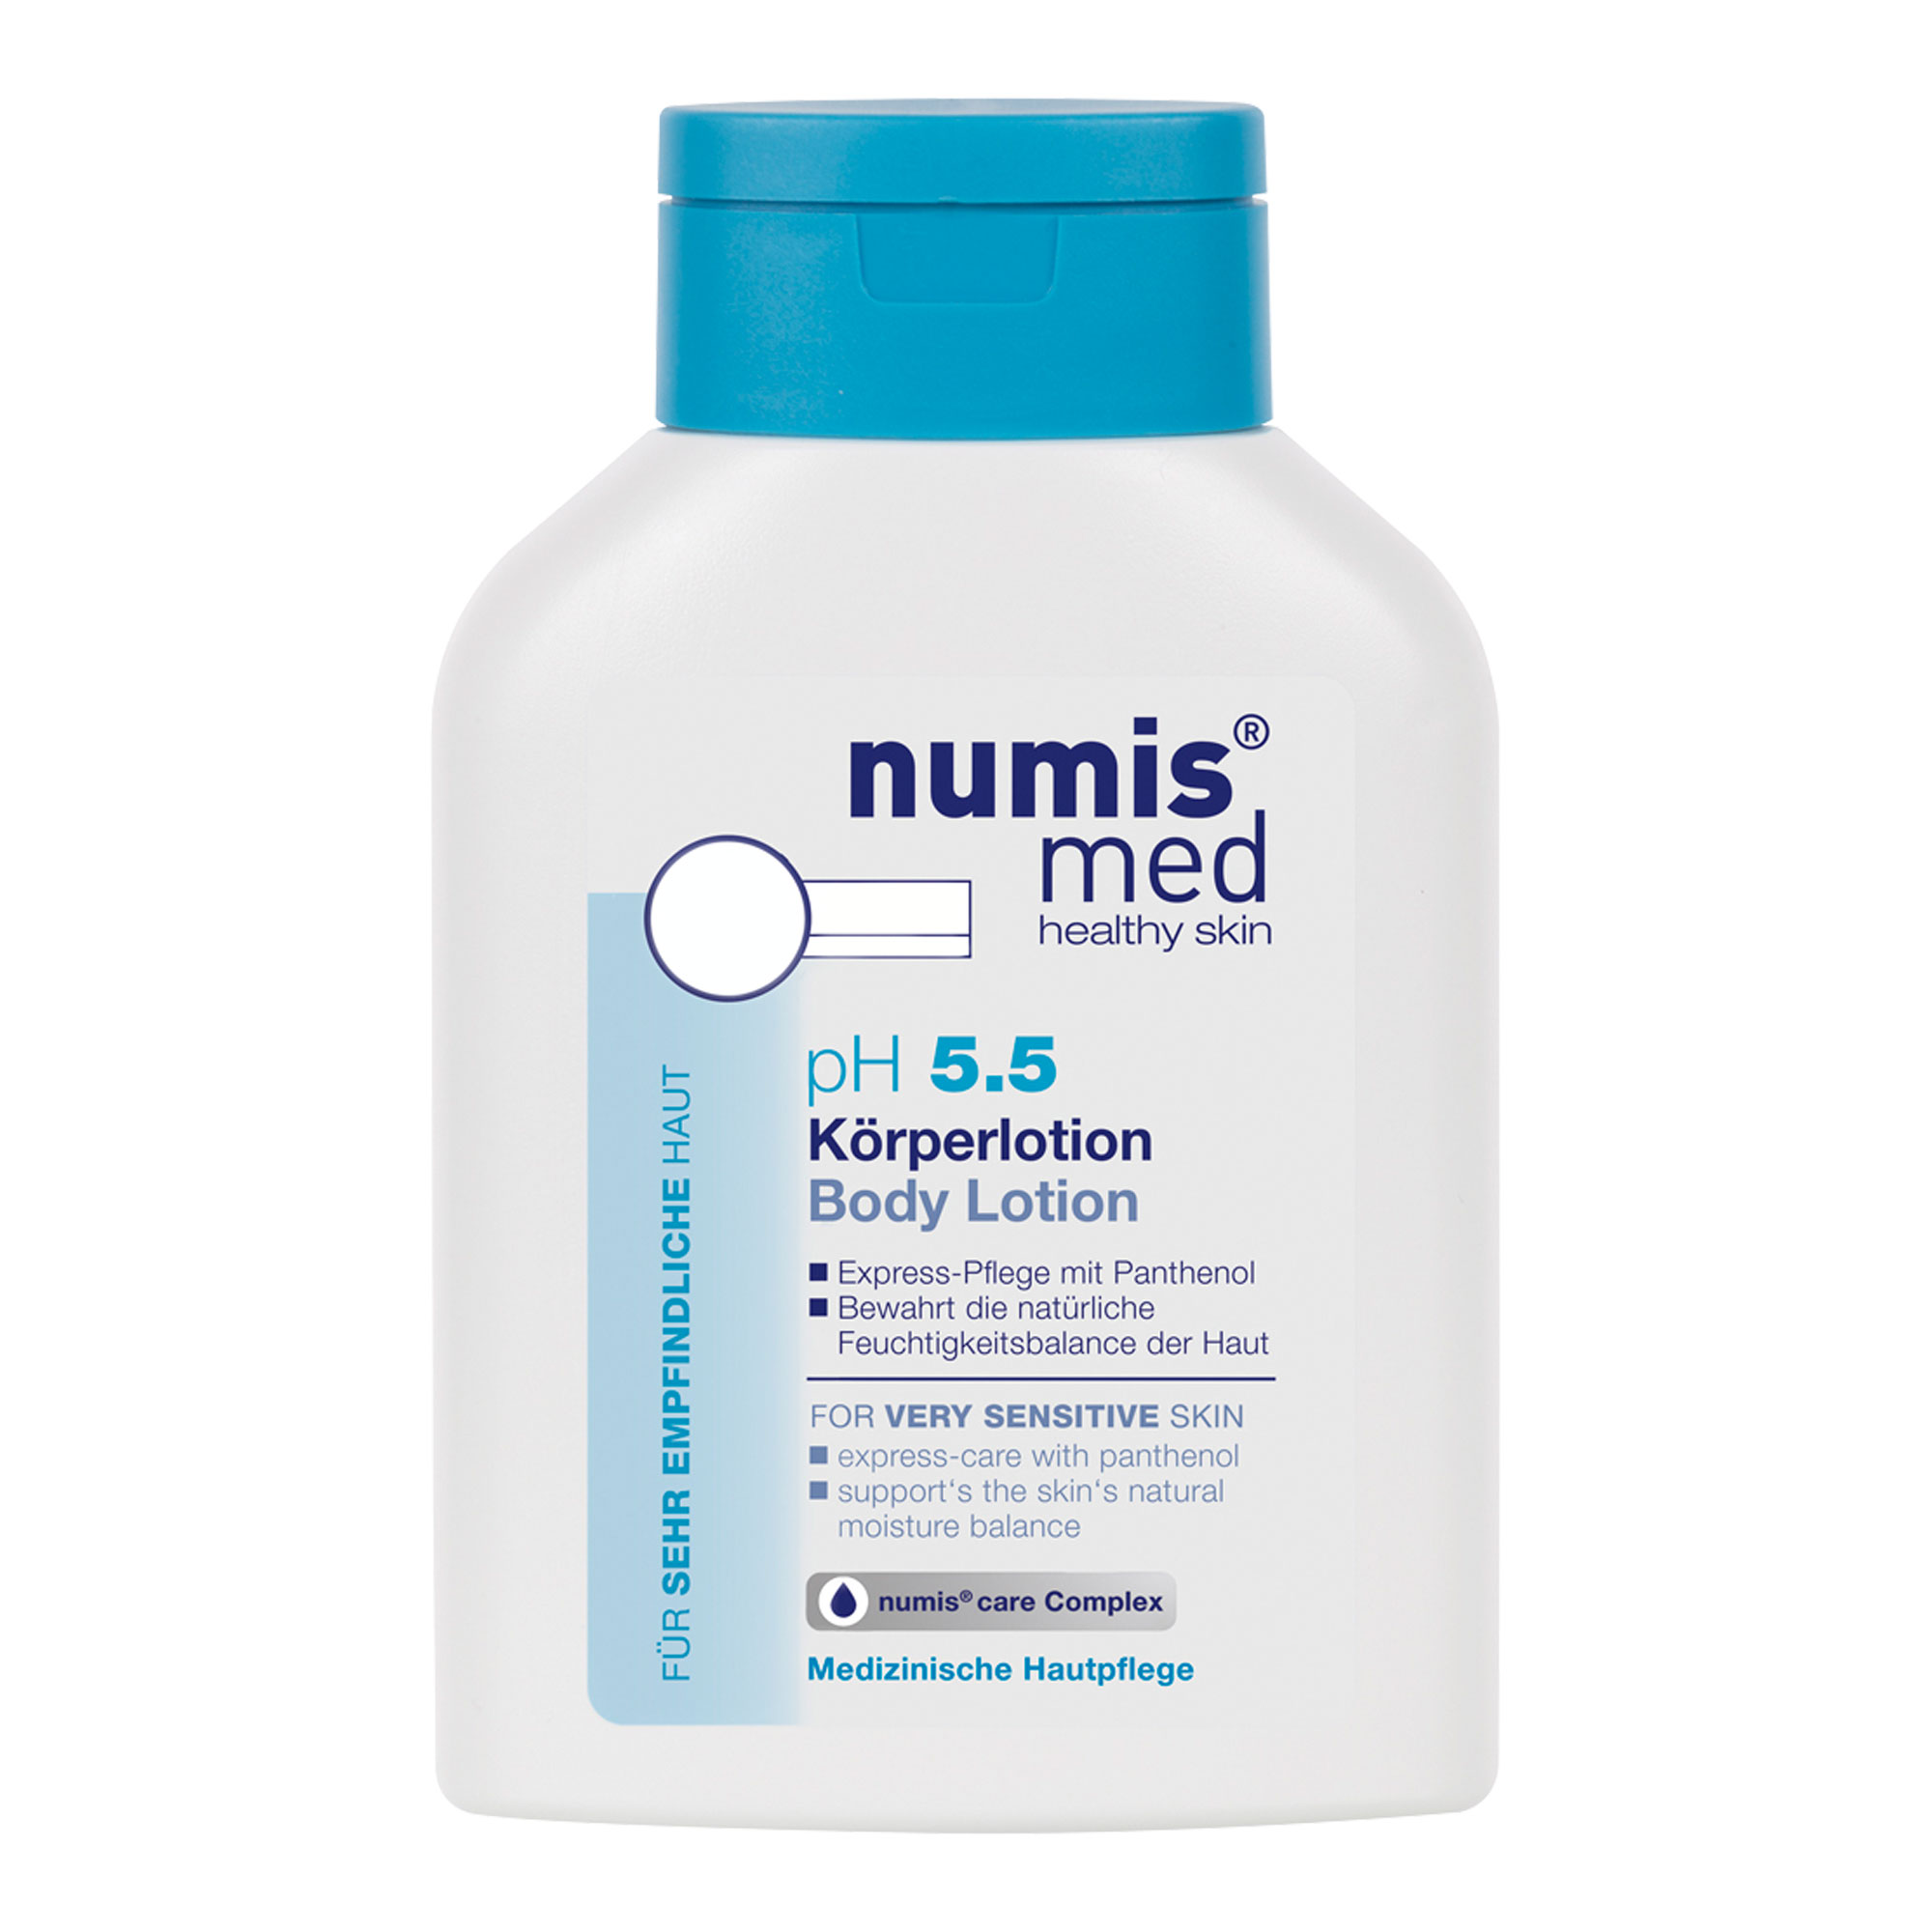 Spendet sehr empfindlicher Haut sofort Feuchtigkeit. Mit Panthenol und dem numis® care Complex.